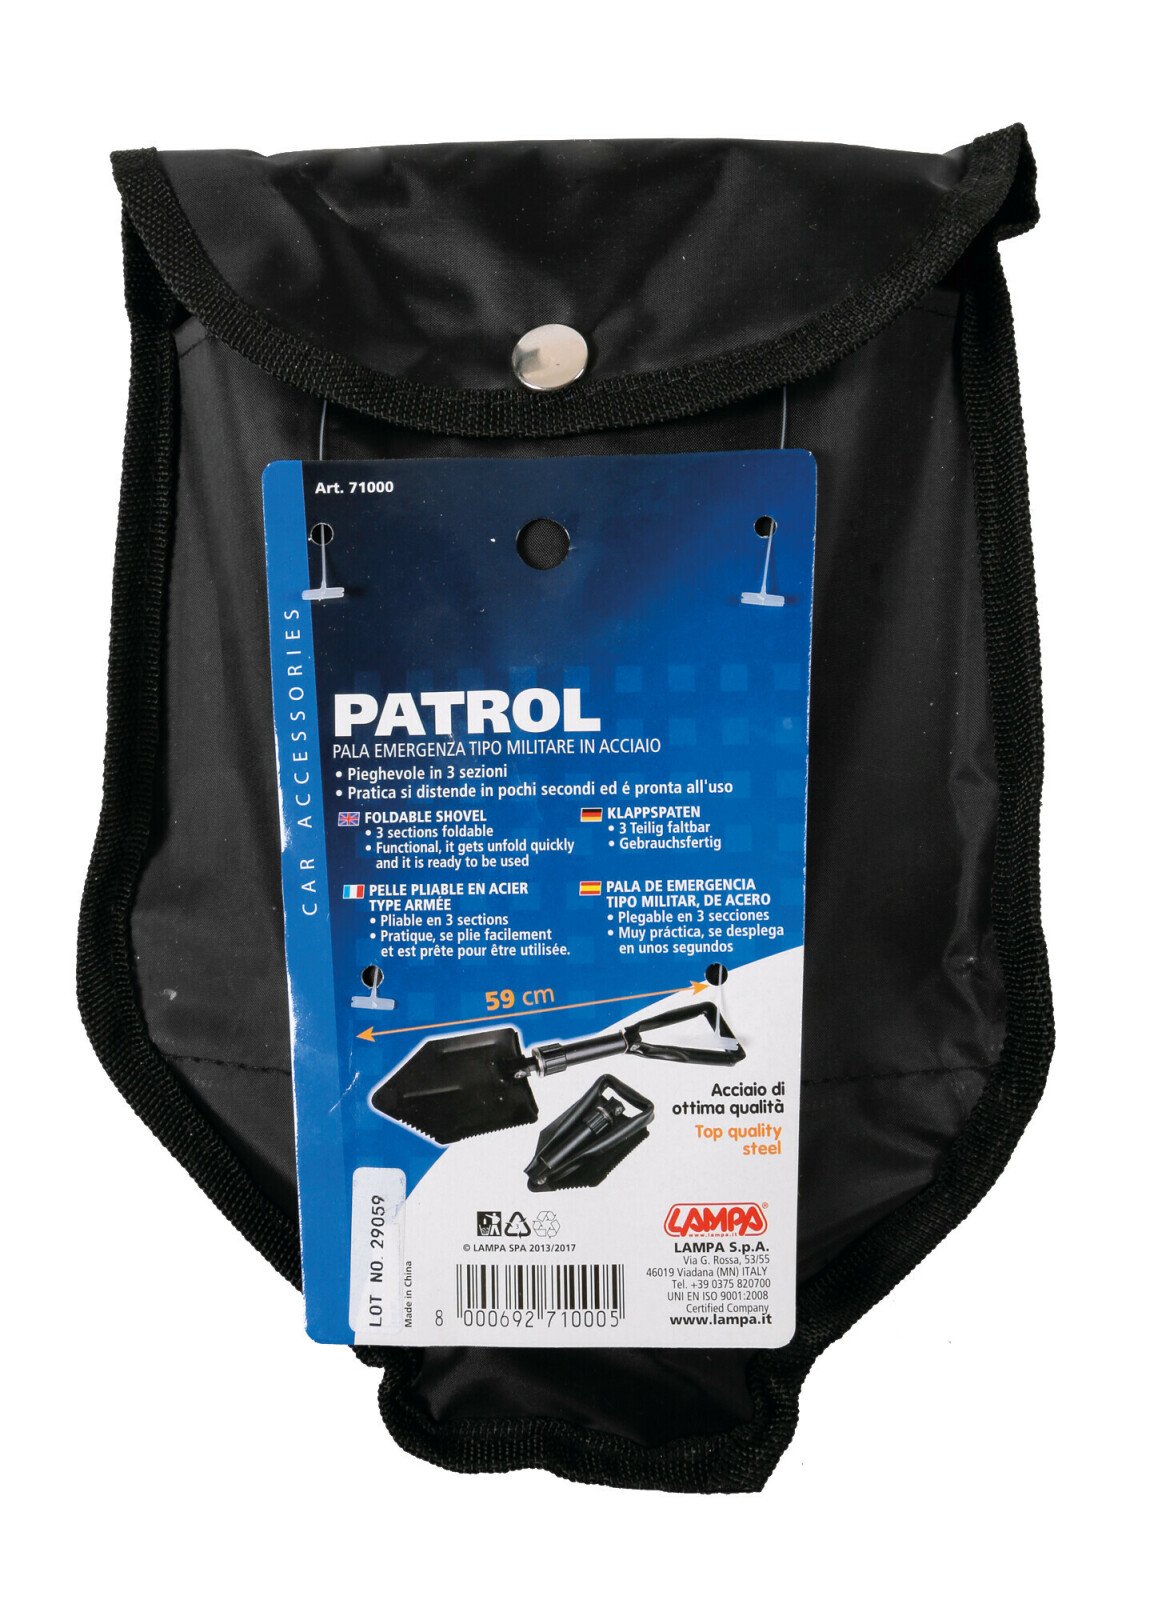 Patrol - Military style foldable shovel thumb